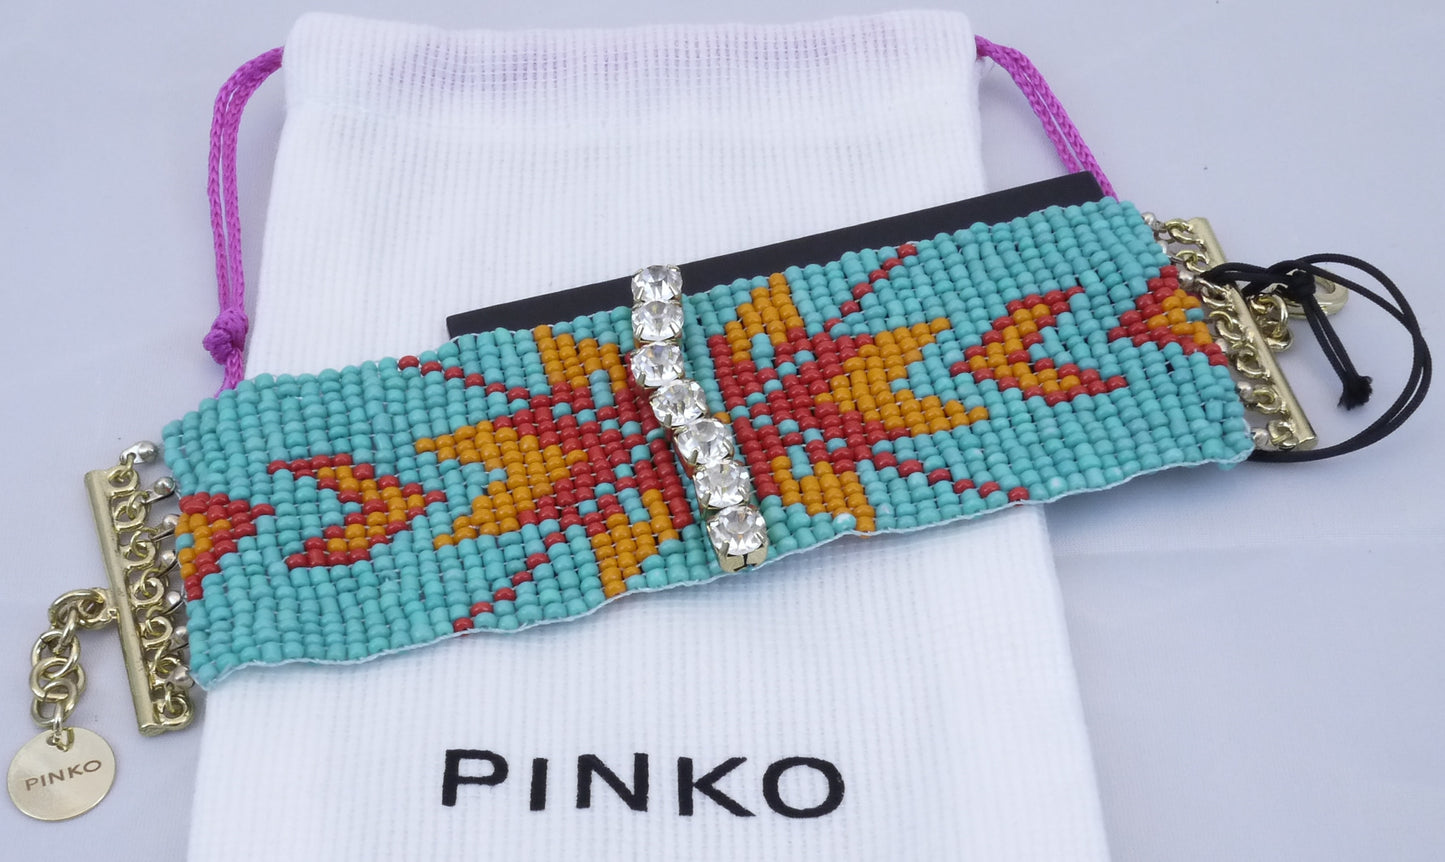 Pinko Armkette "Bunt" mit Strasssteinen